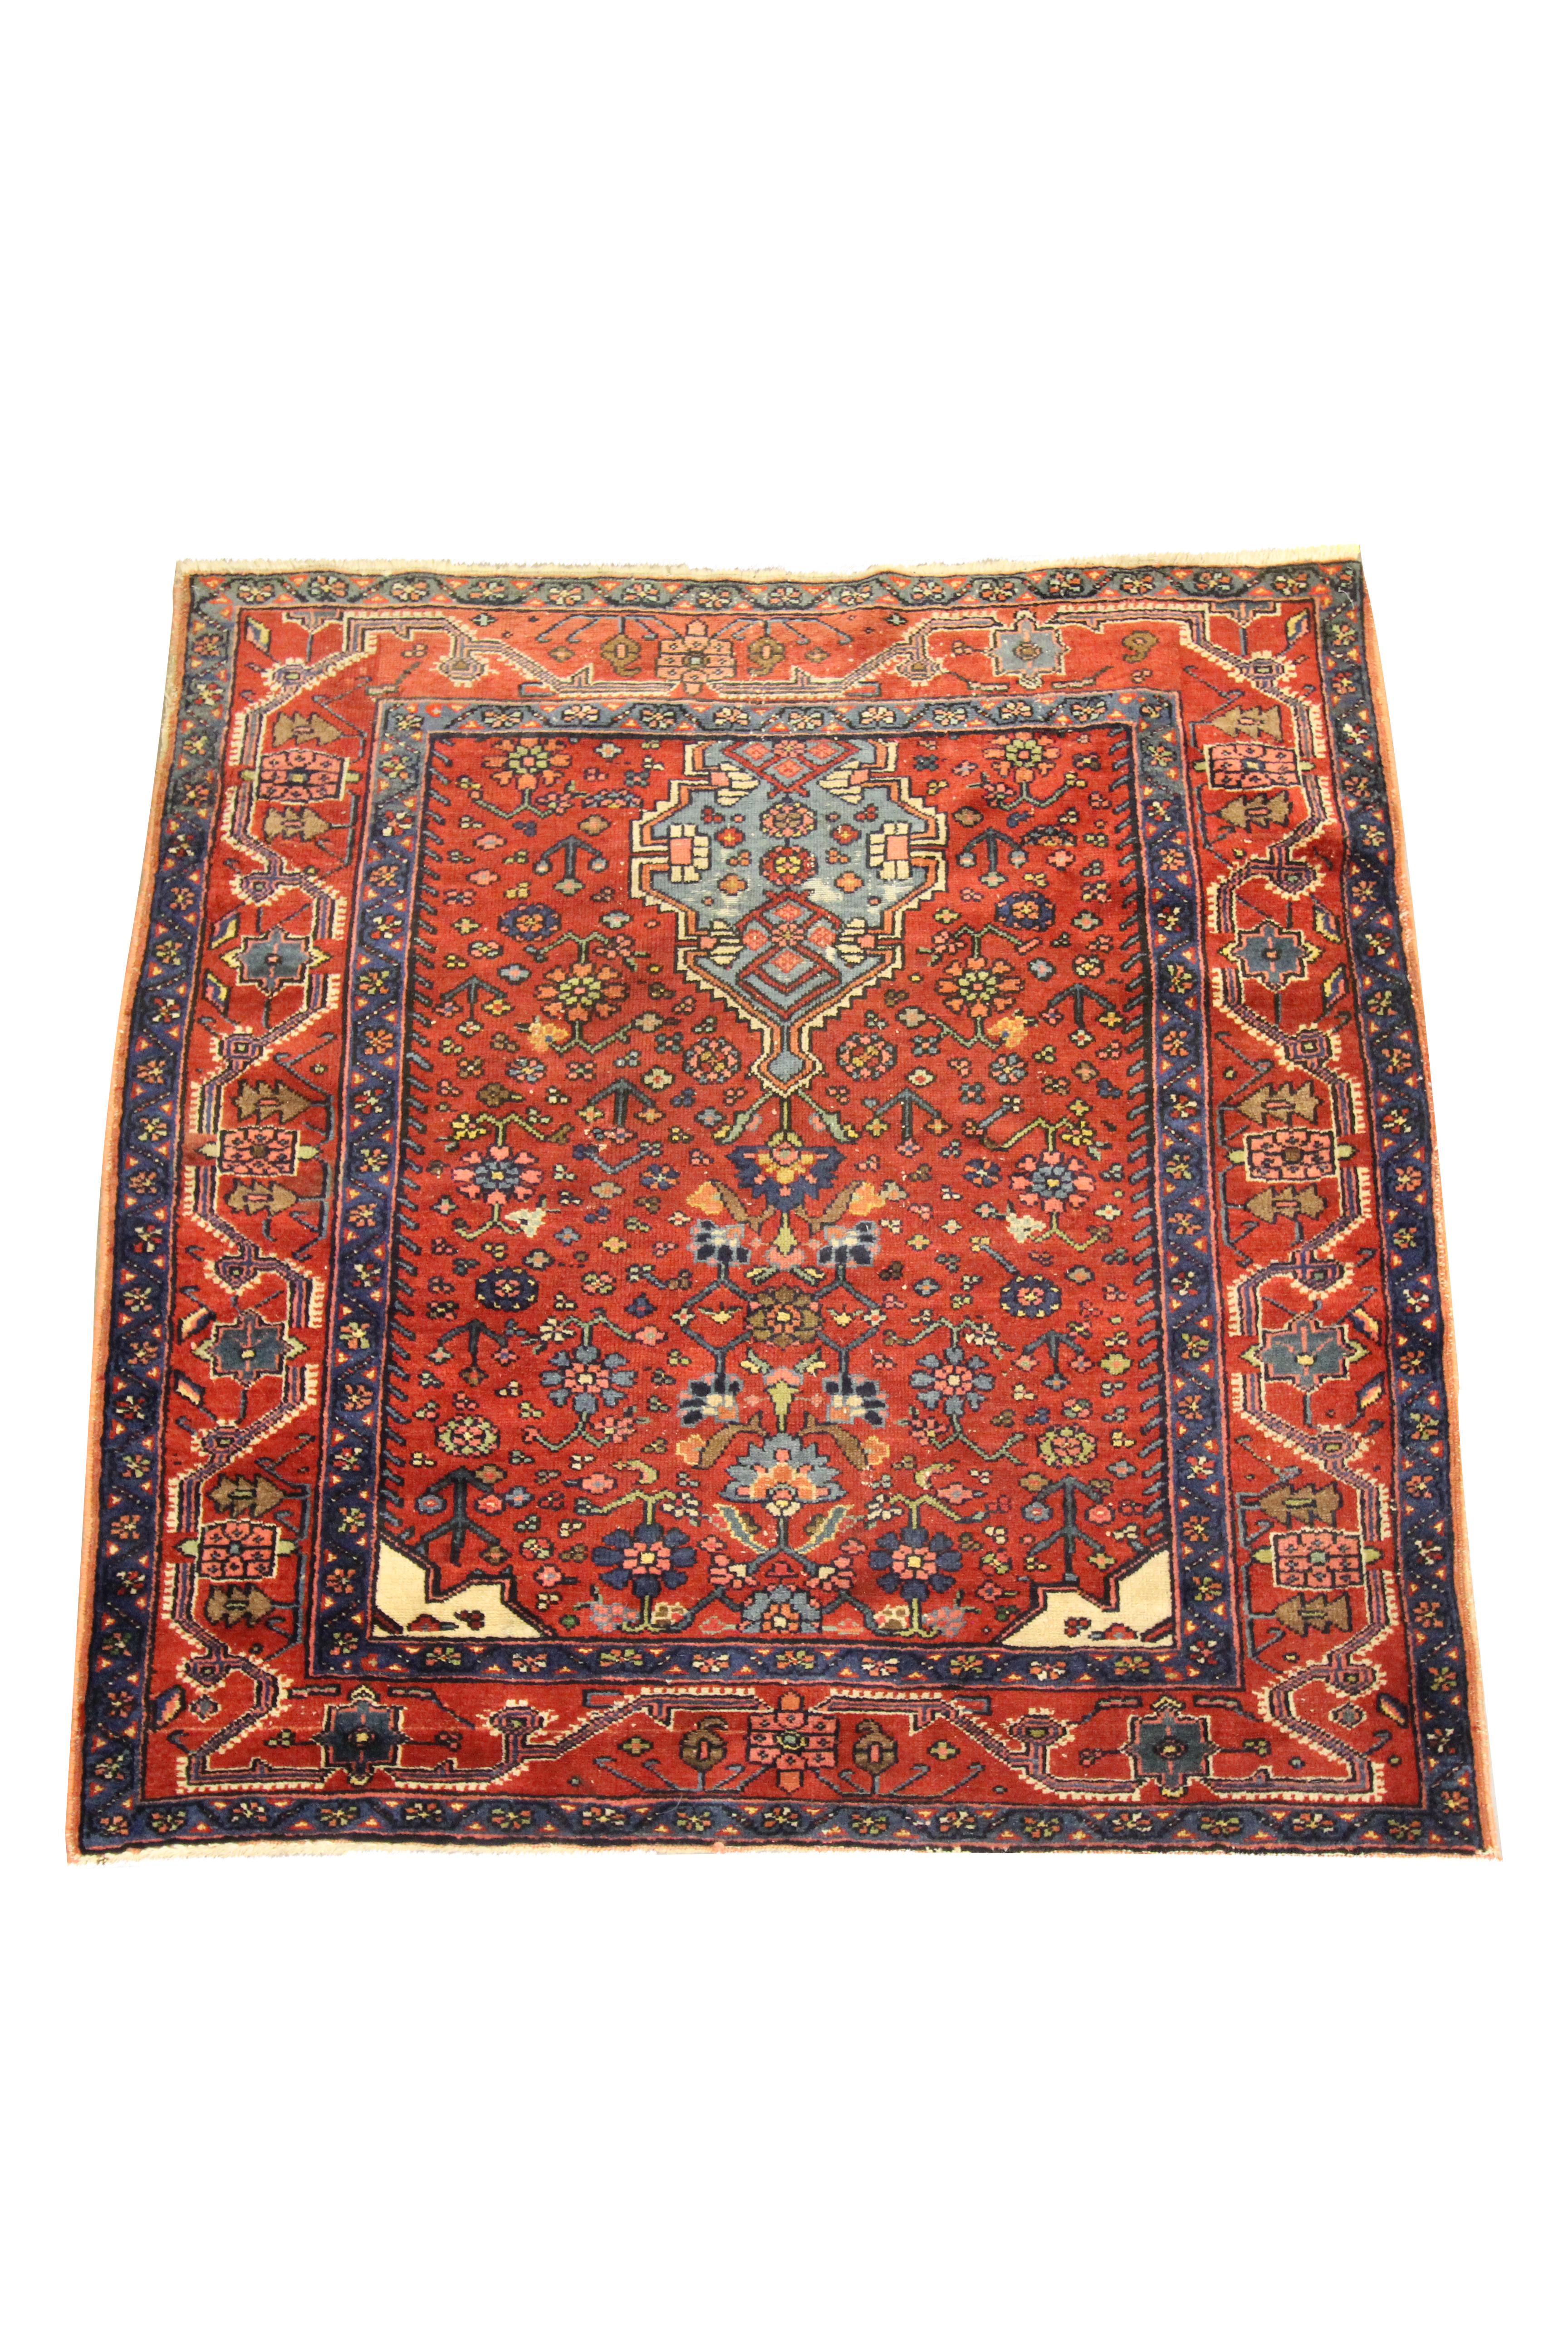 Ce beau tapis en laine est un excellent exemple de tapis tissé à la fin du XIXe siècle, vers 1880. Le dessin présente un motif tribal traditionnel avec des motifs indigènes tissés sur un fond rouge rouille avec des accents de bleu, vert, orange et